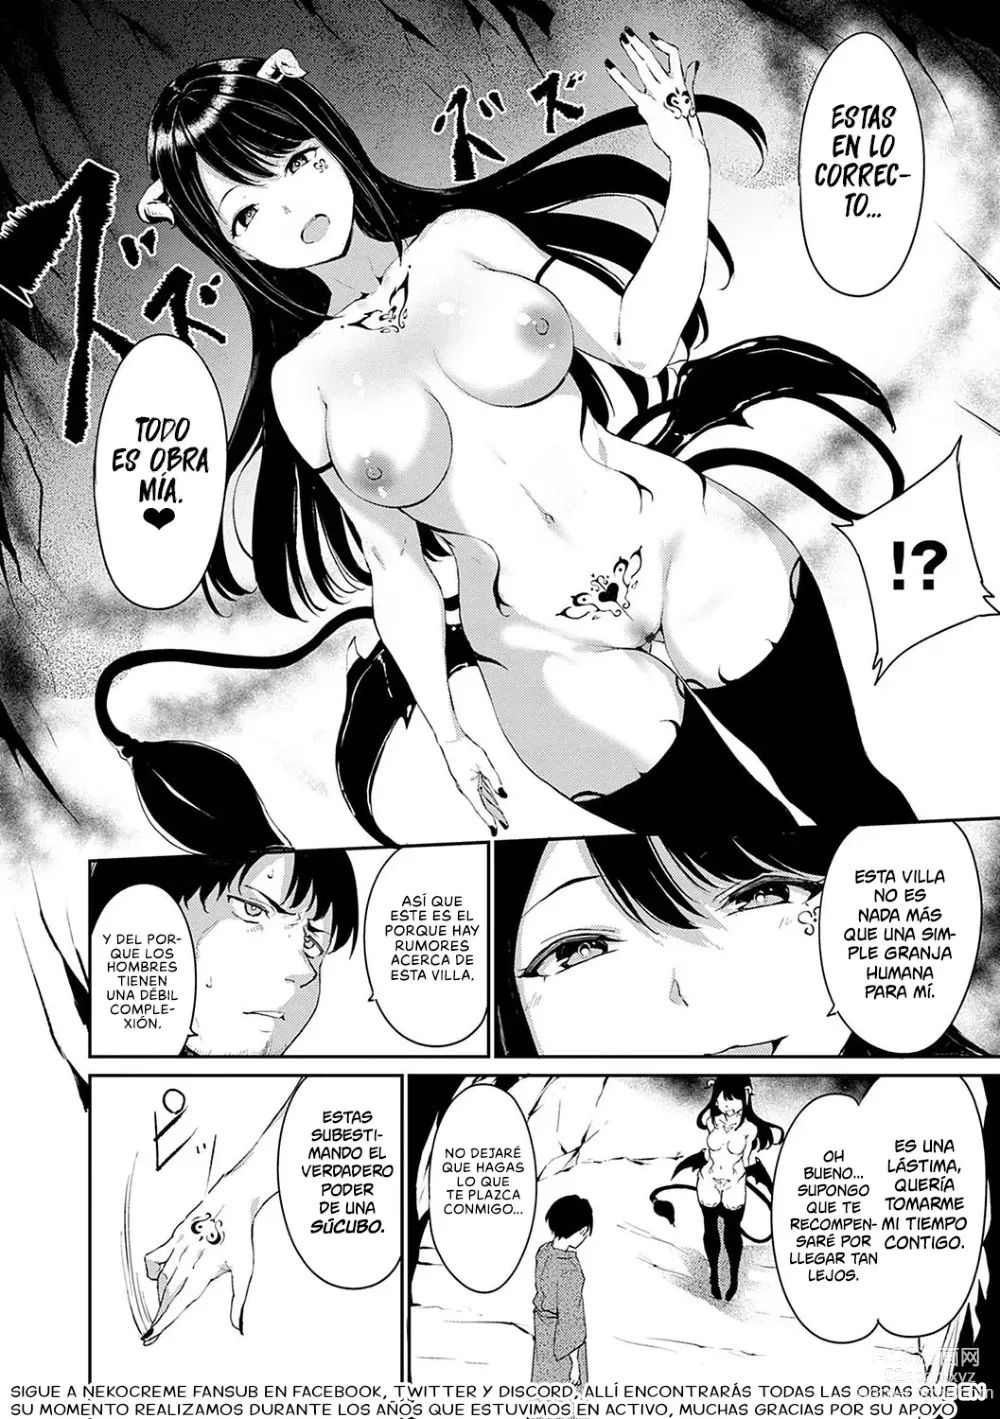 Page 56 of manga La Aldea Oscura Noche